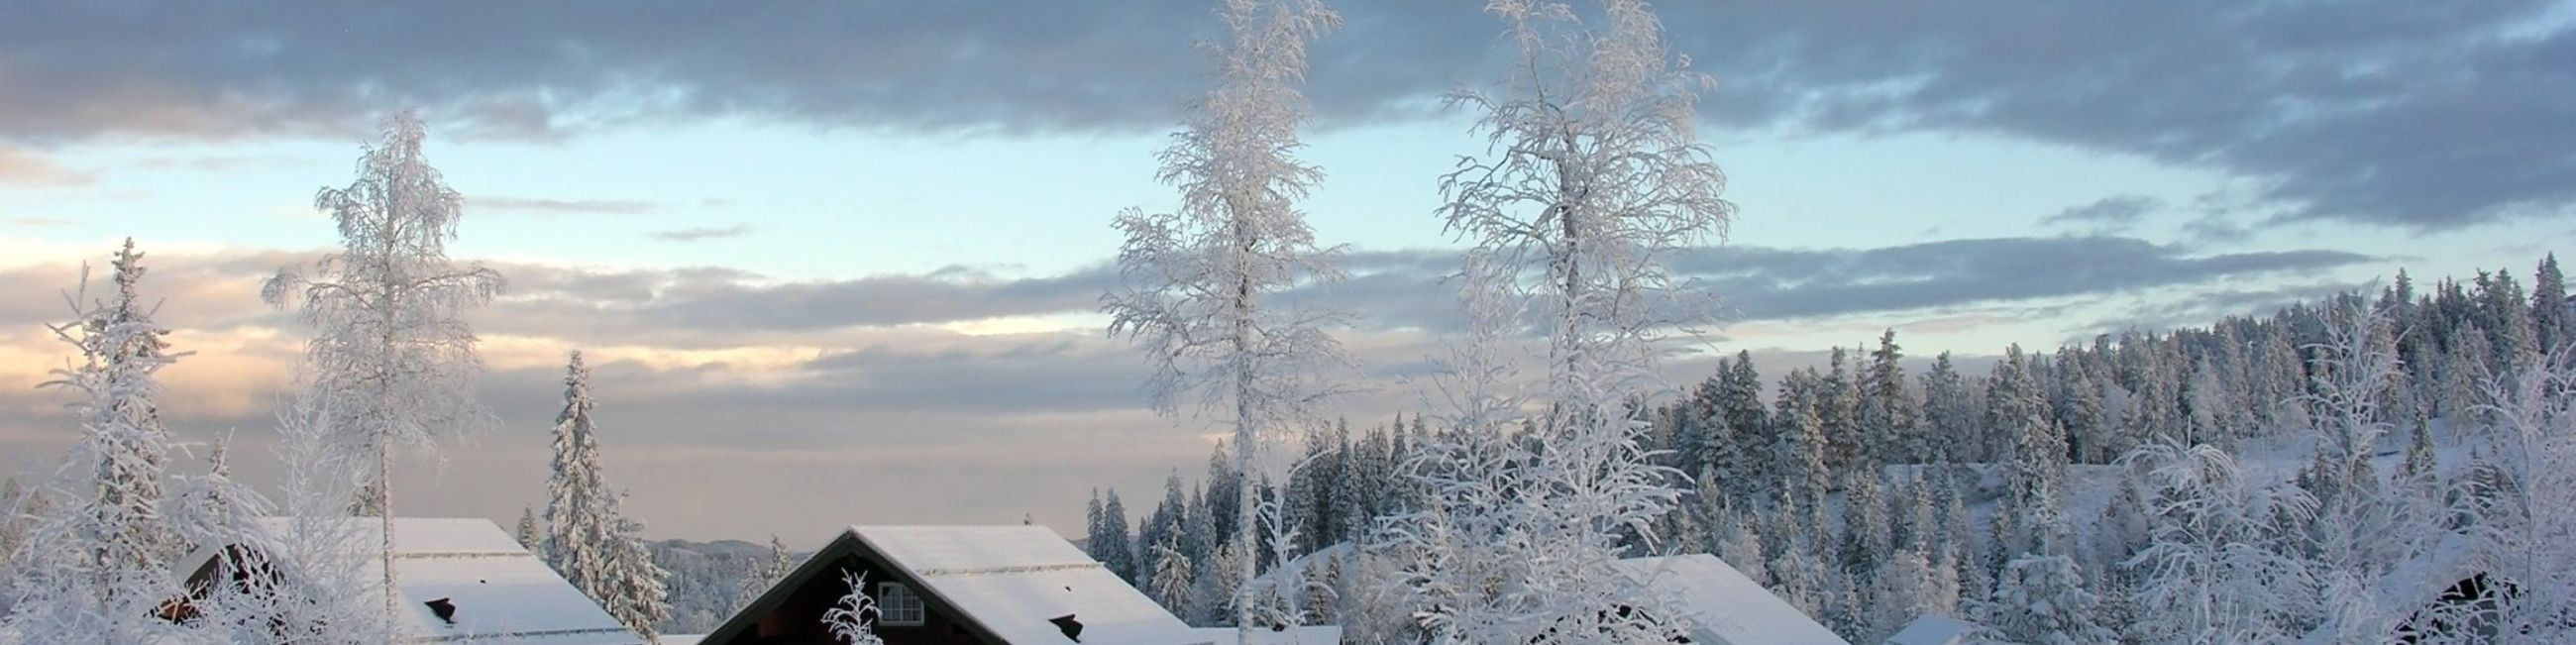 Icy Getec paigaldab alates 2013. aastast Kanada soojusvahu tootja Icynene H2FOAM soojustusvahte Eestis. Töid teostab materjali tootja poolt litsenseeritud paigaldaja.